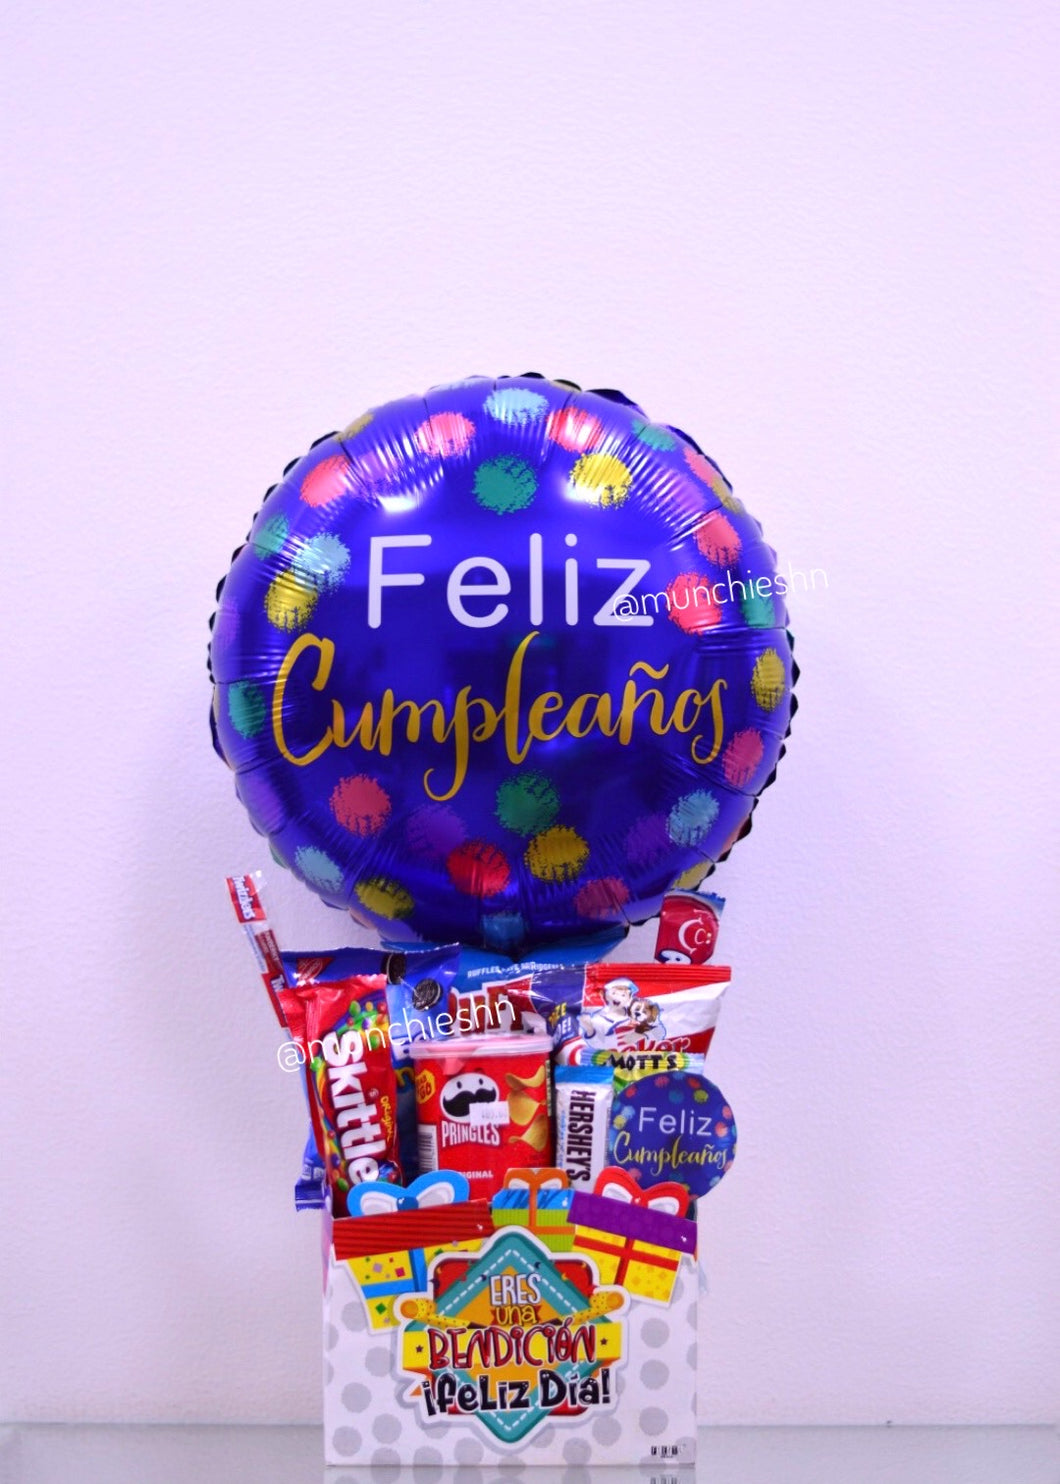 Caja grande Eres una Bendición Feliz Día con snacks y globo grande azul Feliz Cumpleaños